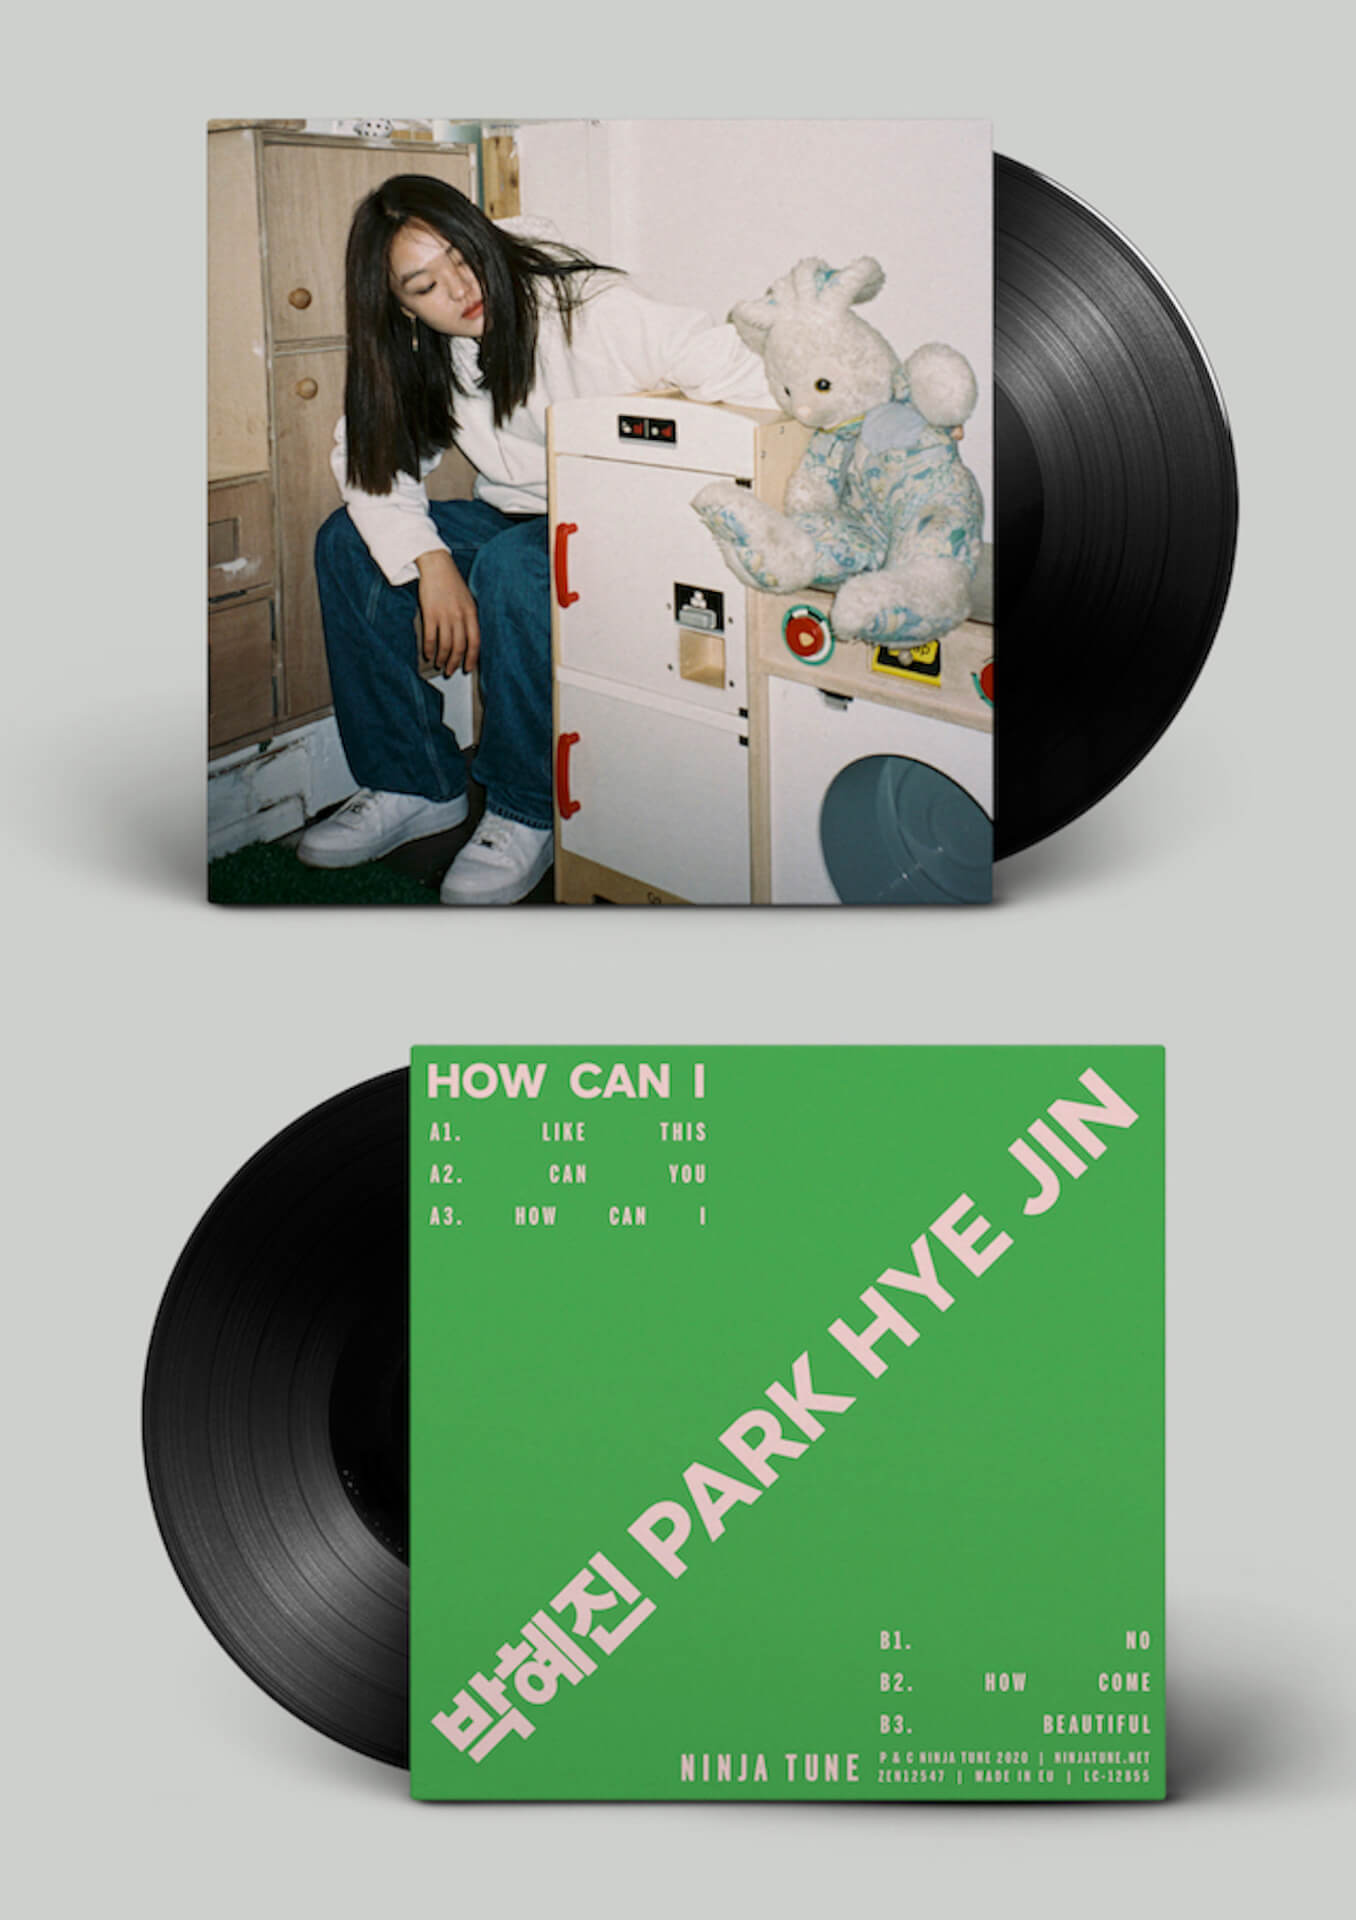 Park Hye Jin